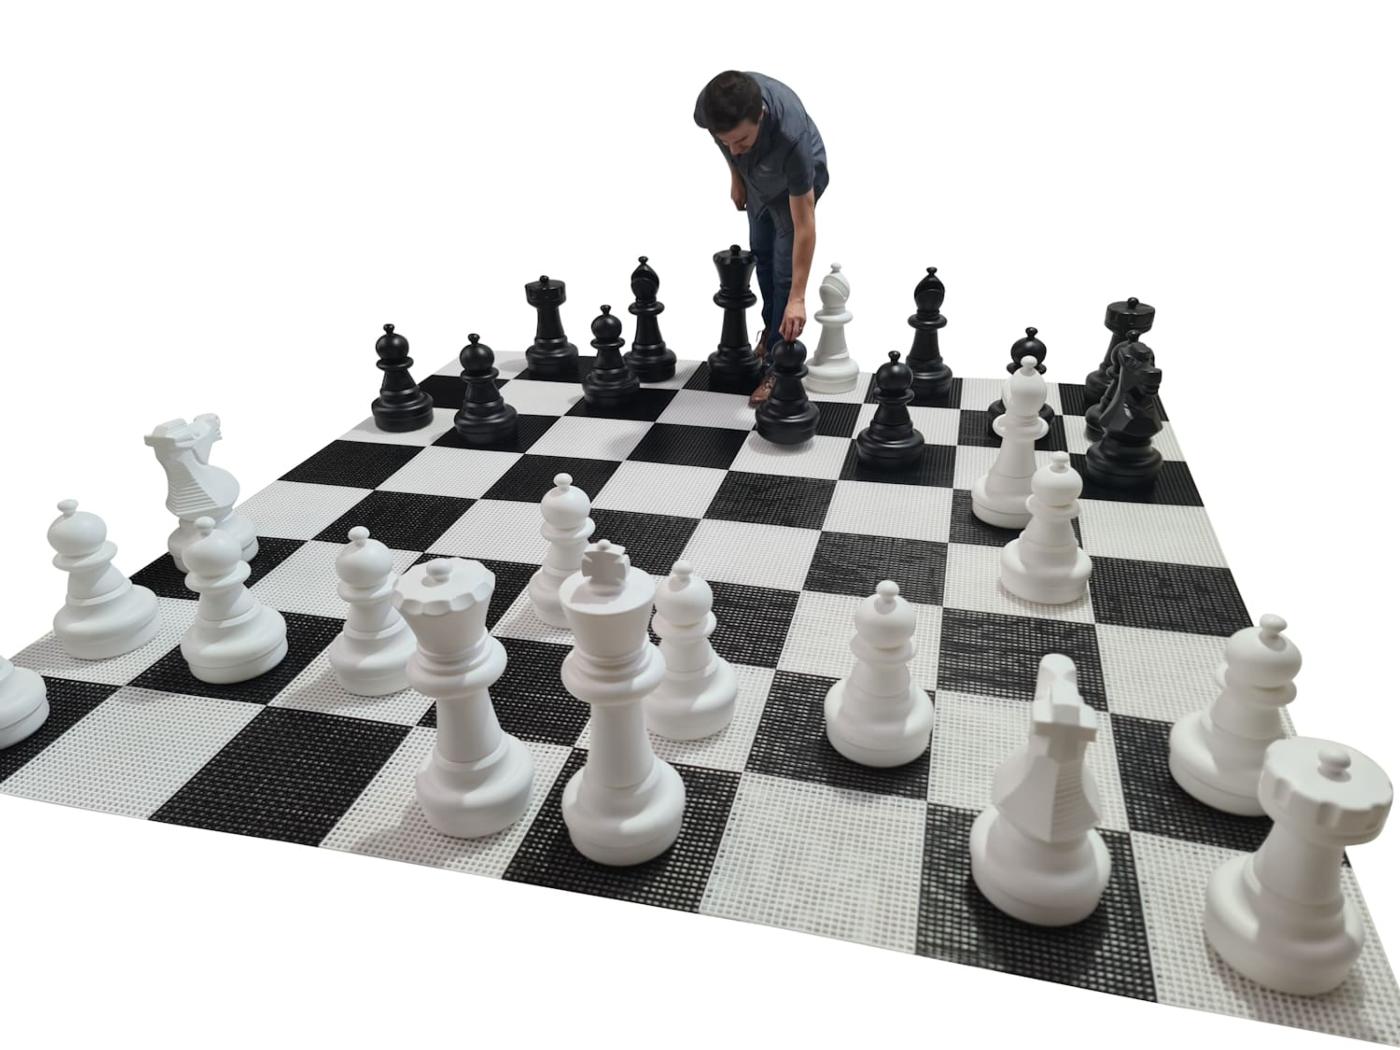 Joc d'escacs gegant amb tauler rígid gegant inclòs joc complet sobre tauler amb jugador vista 2